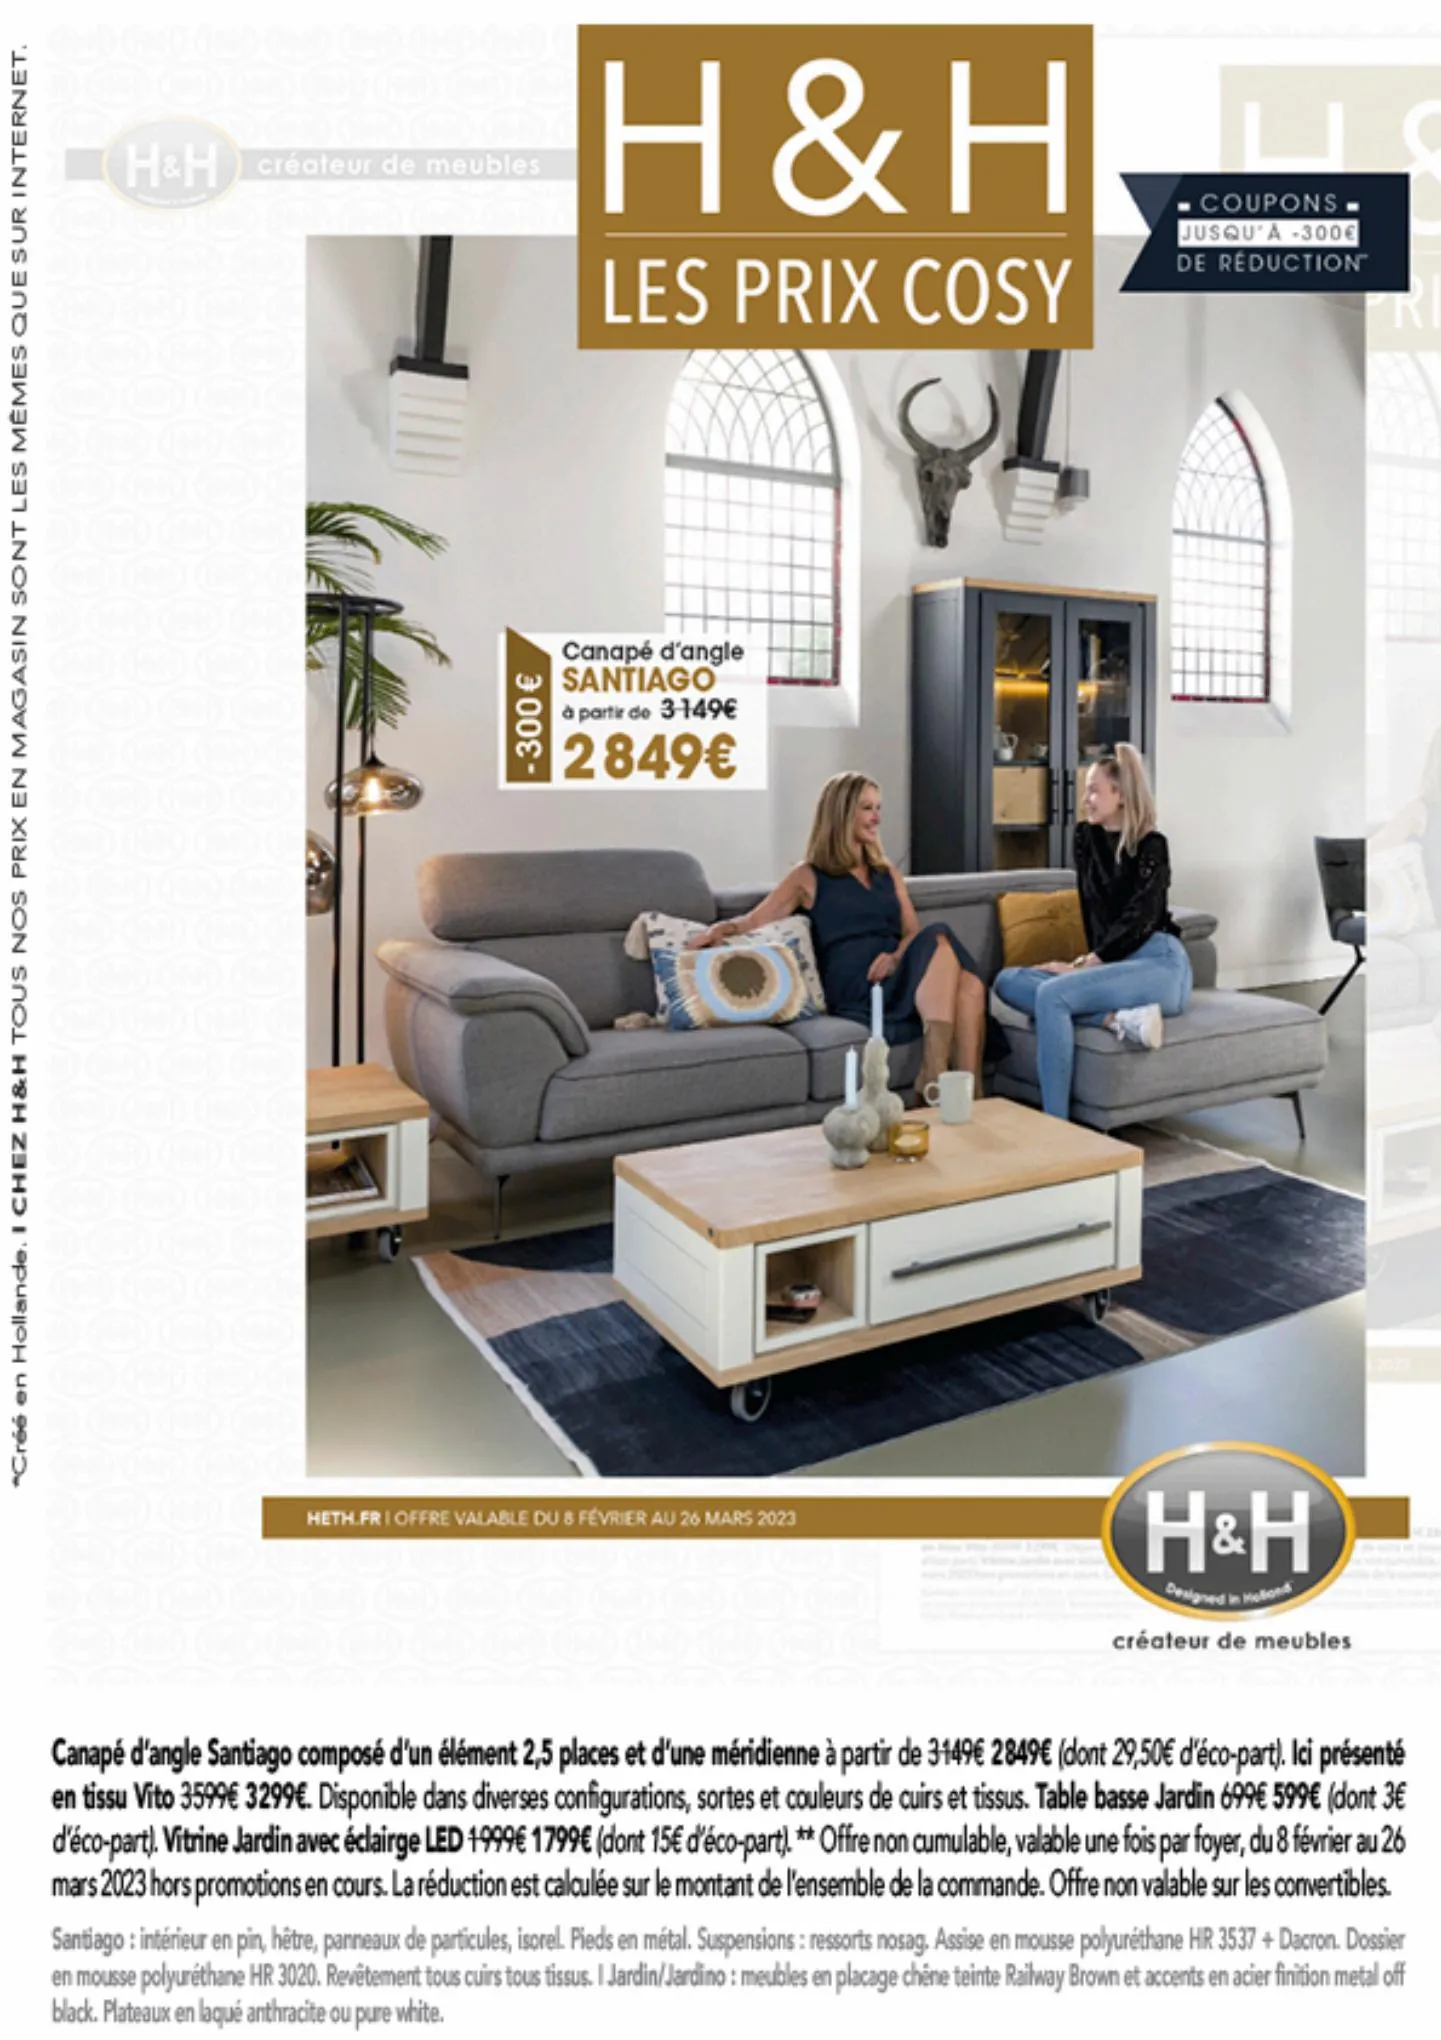 Catalogue H&H créateur de meubles - H&H PRIX COSY, page 00001